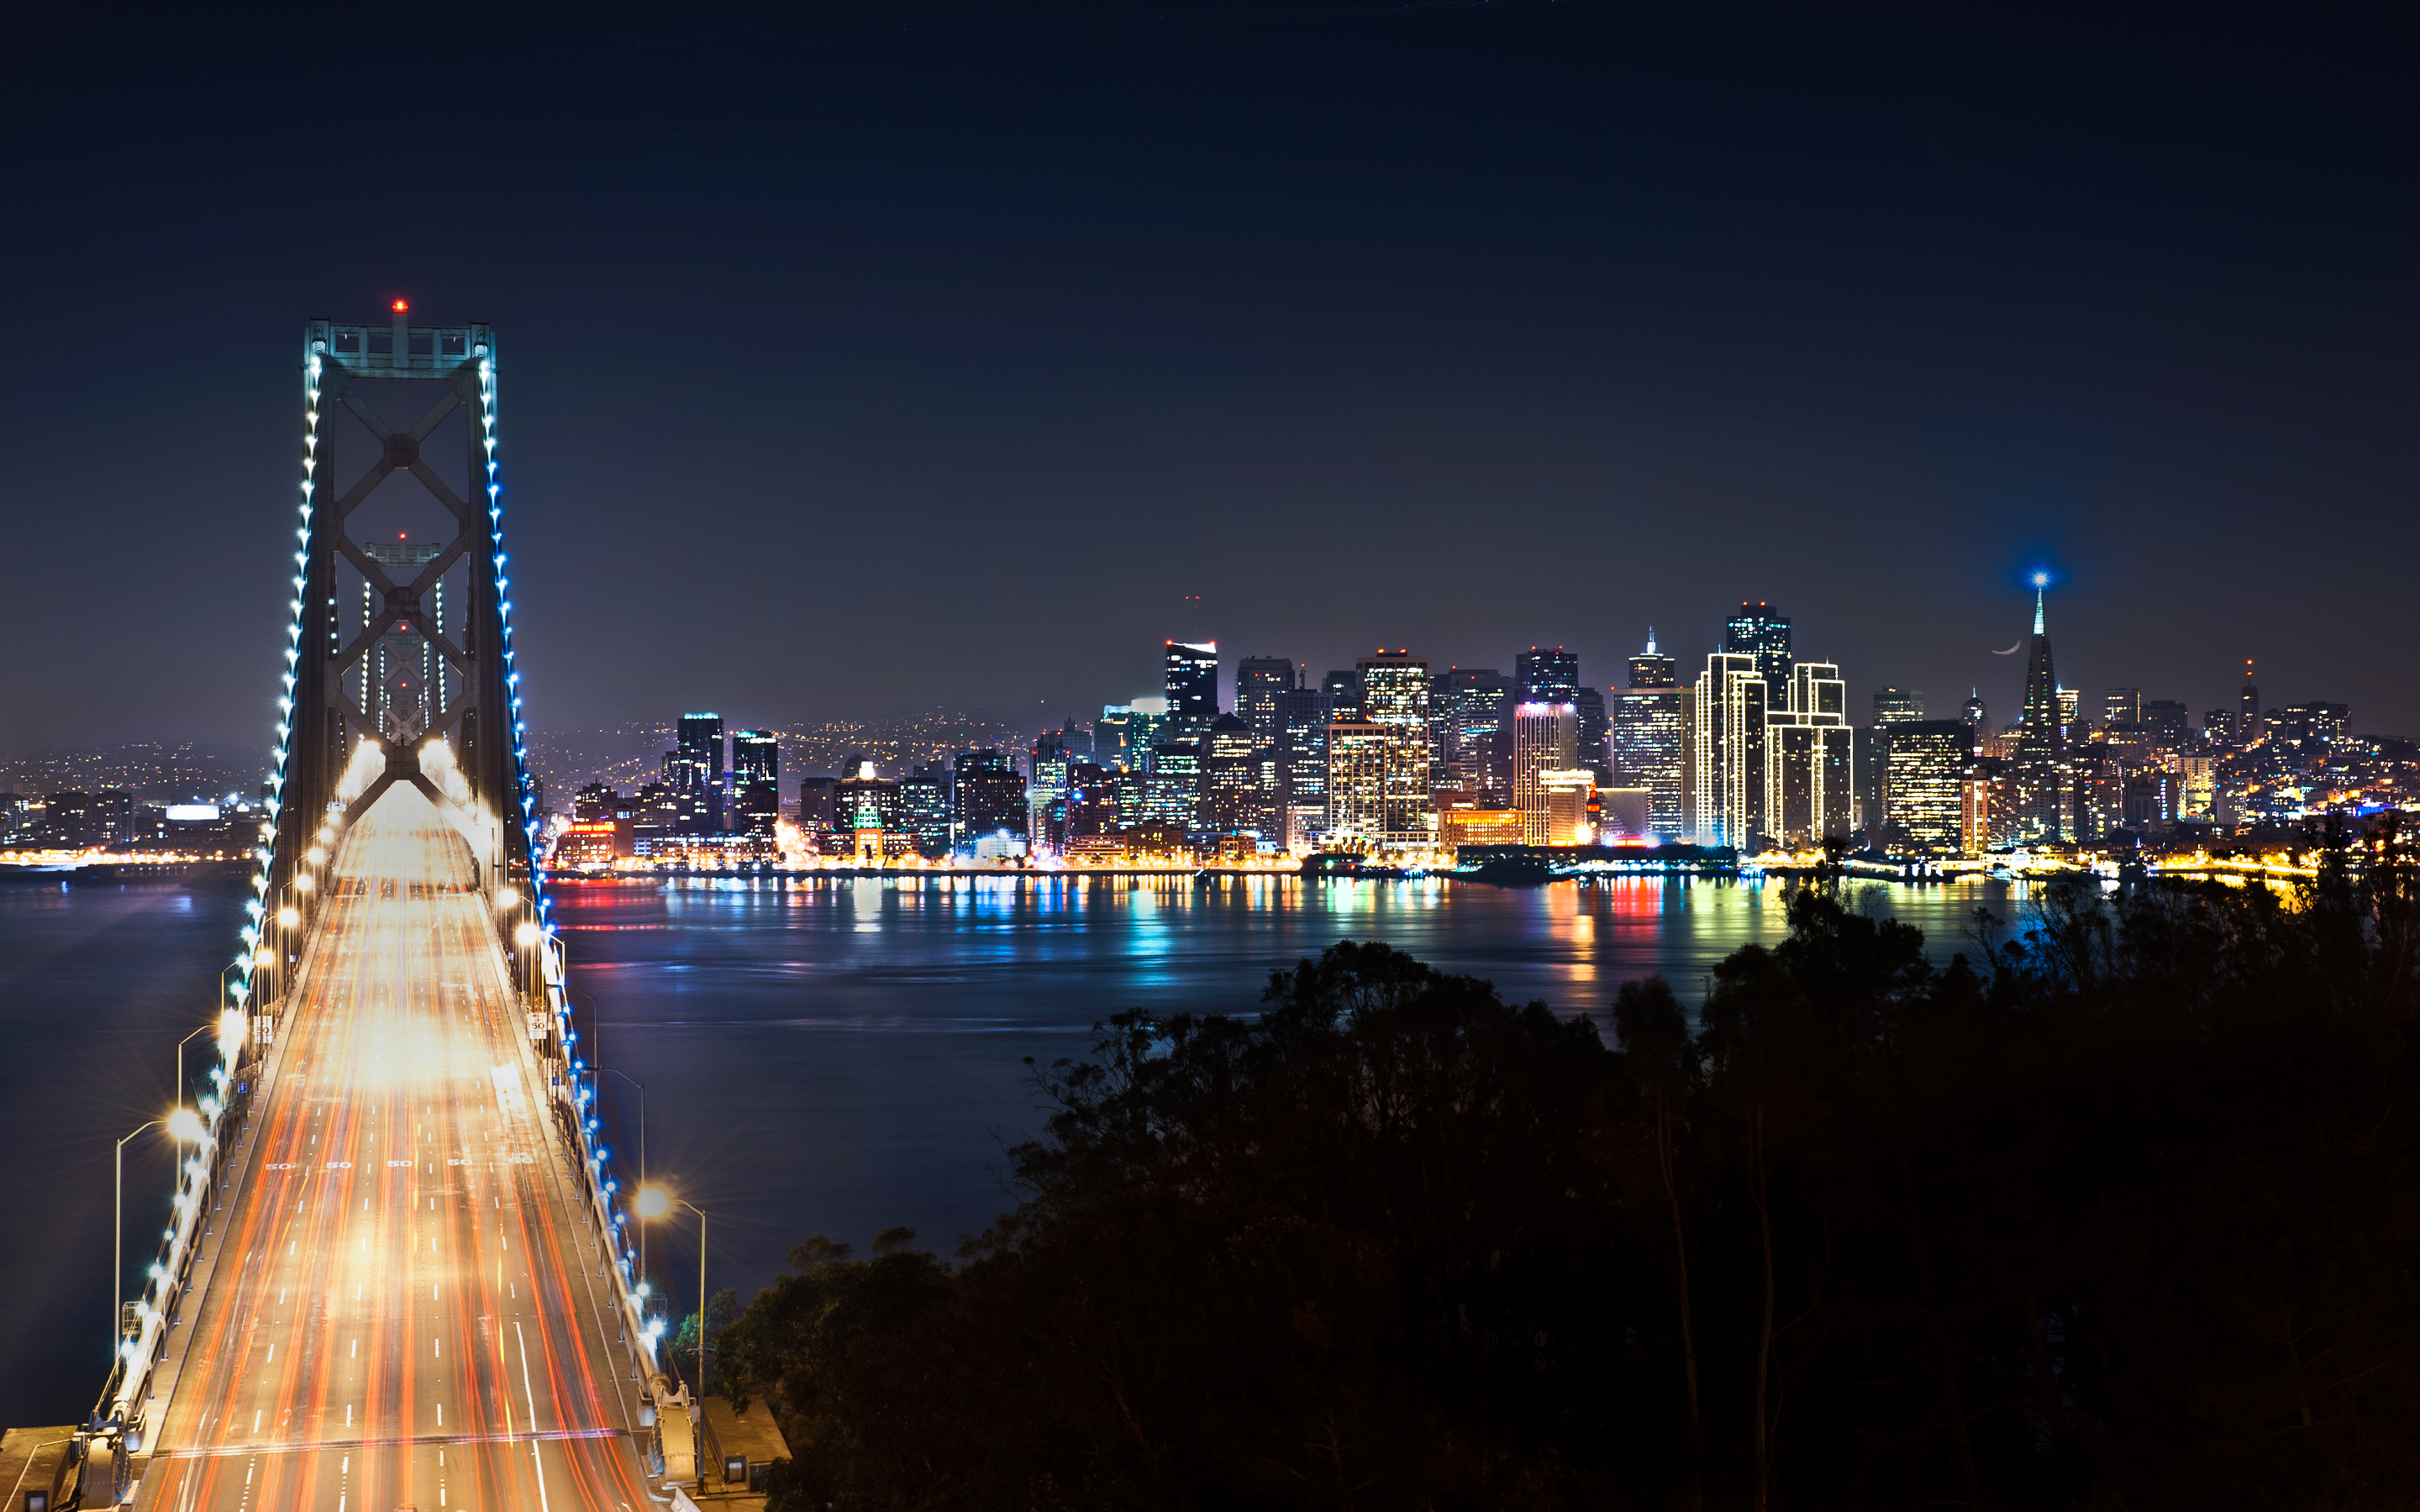 San Francisco Image At Night HD Wallpaper And